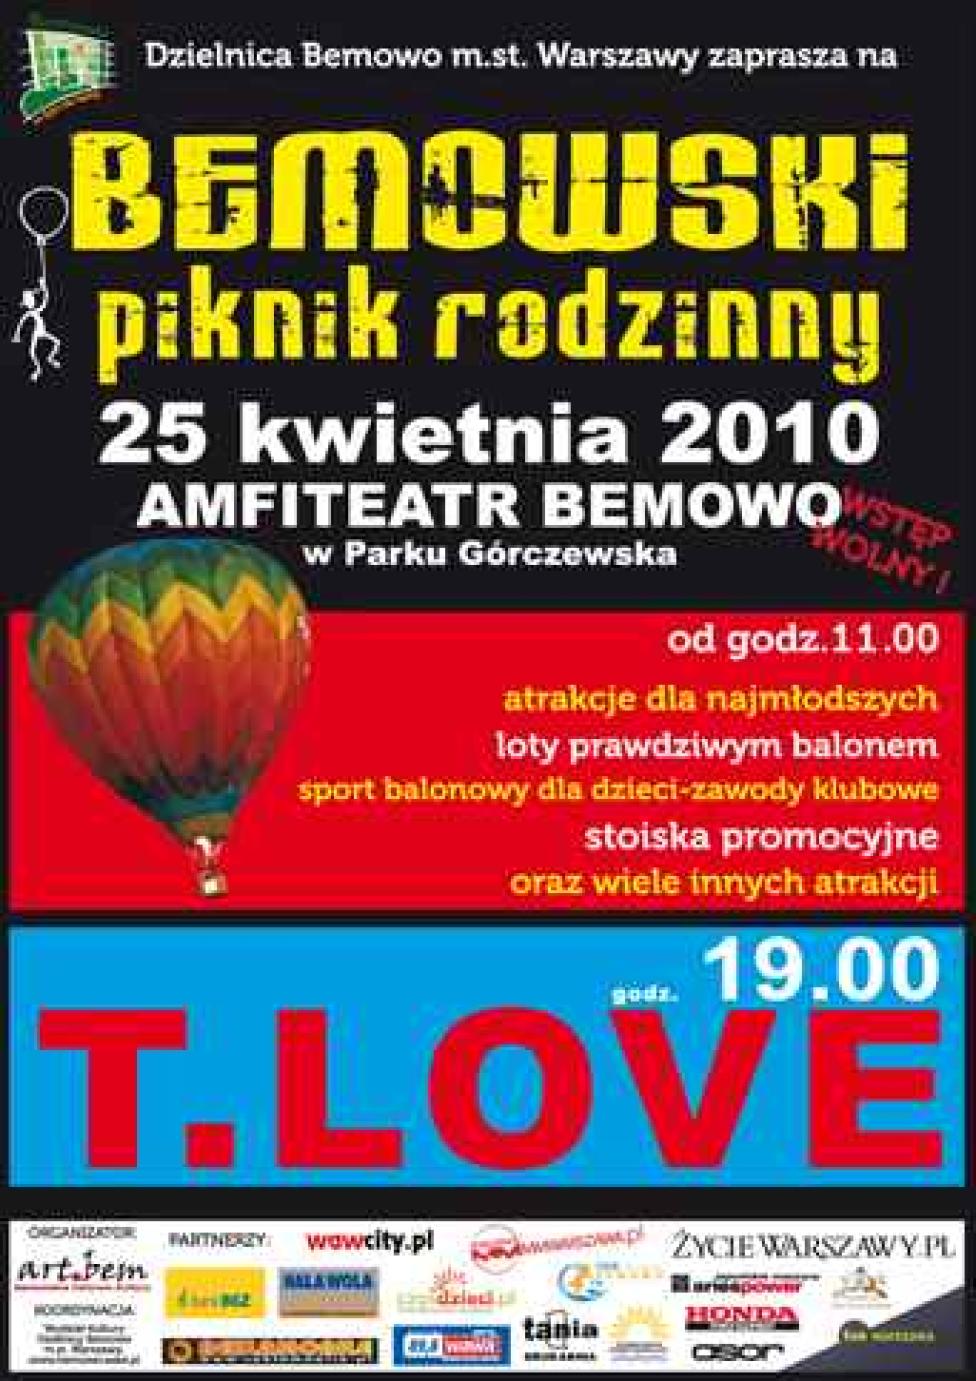 Bemowski Piknik Rodzinny 2010 (plakat)